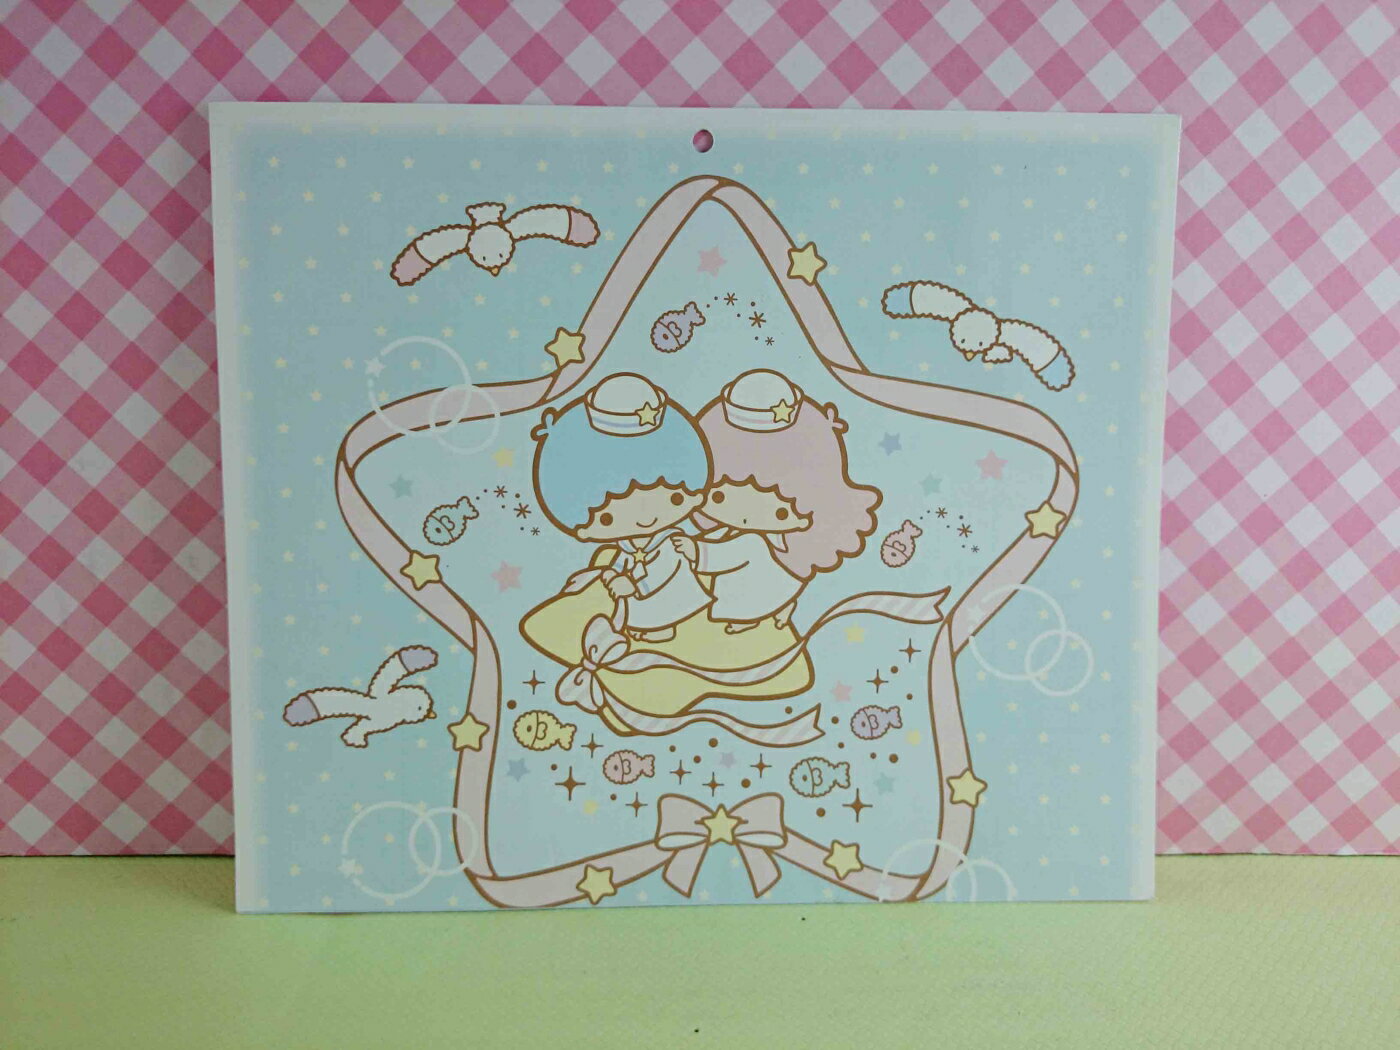 【震撼精品百貨】Little Twin Stars KiKi&LaLa 雙子星小天使 卡片-海軍造型 震撼日式精品百貨